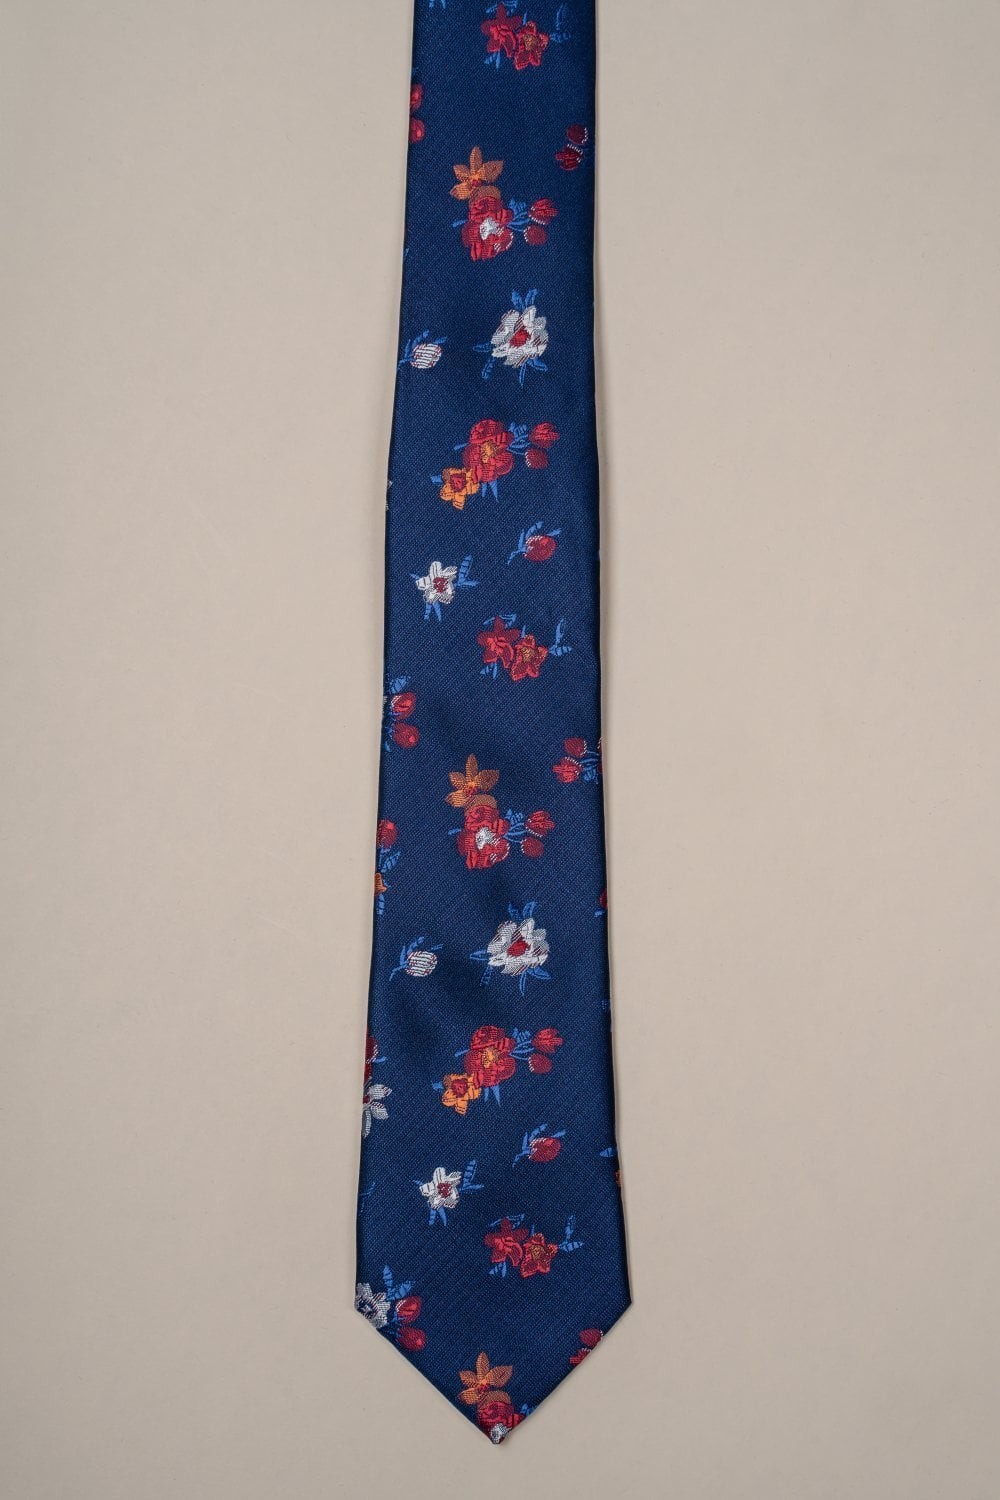 Cravate à motif floral pour hommes - Navy and Red